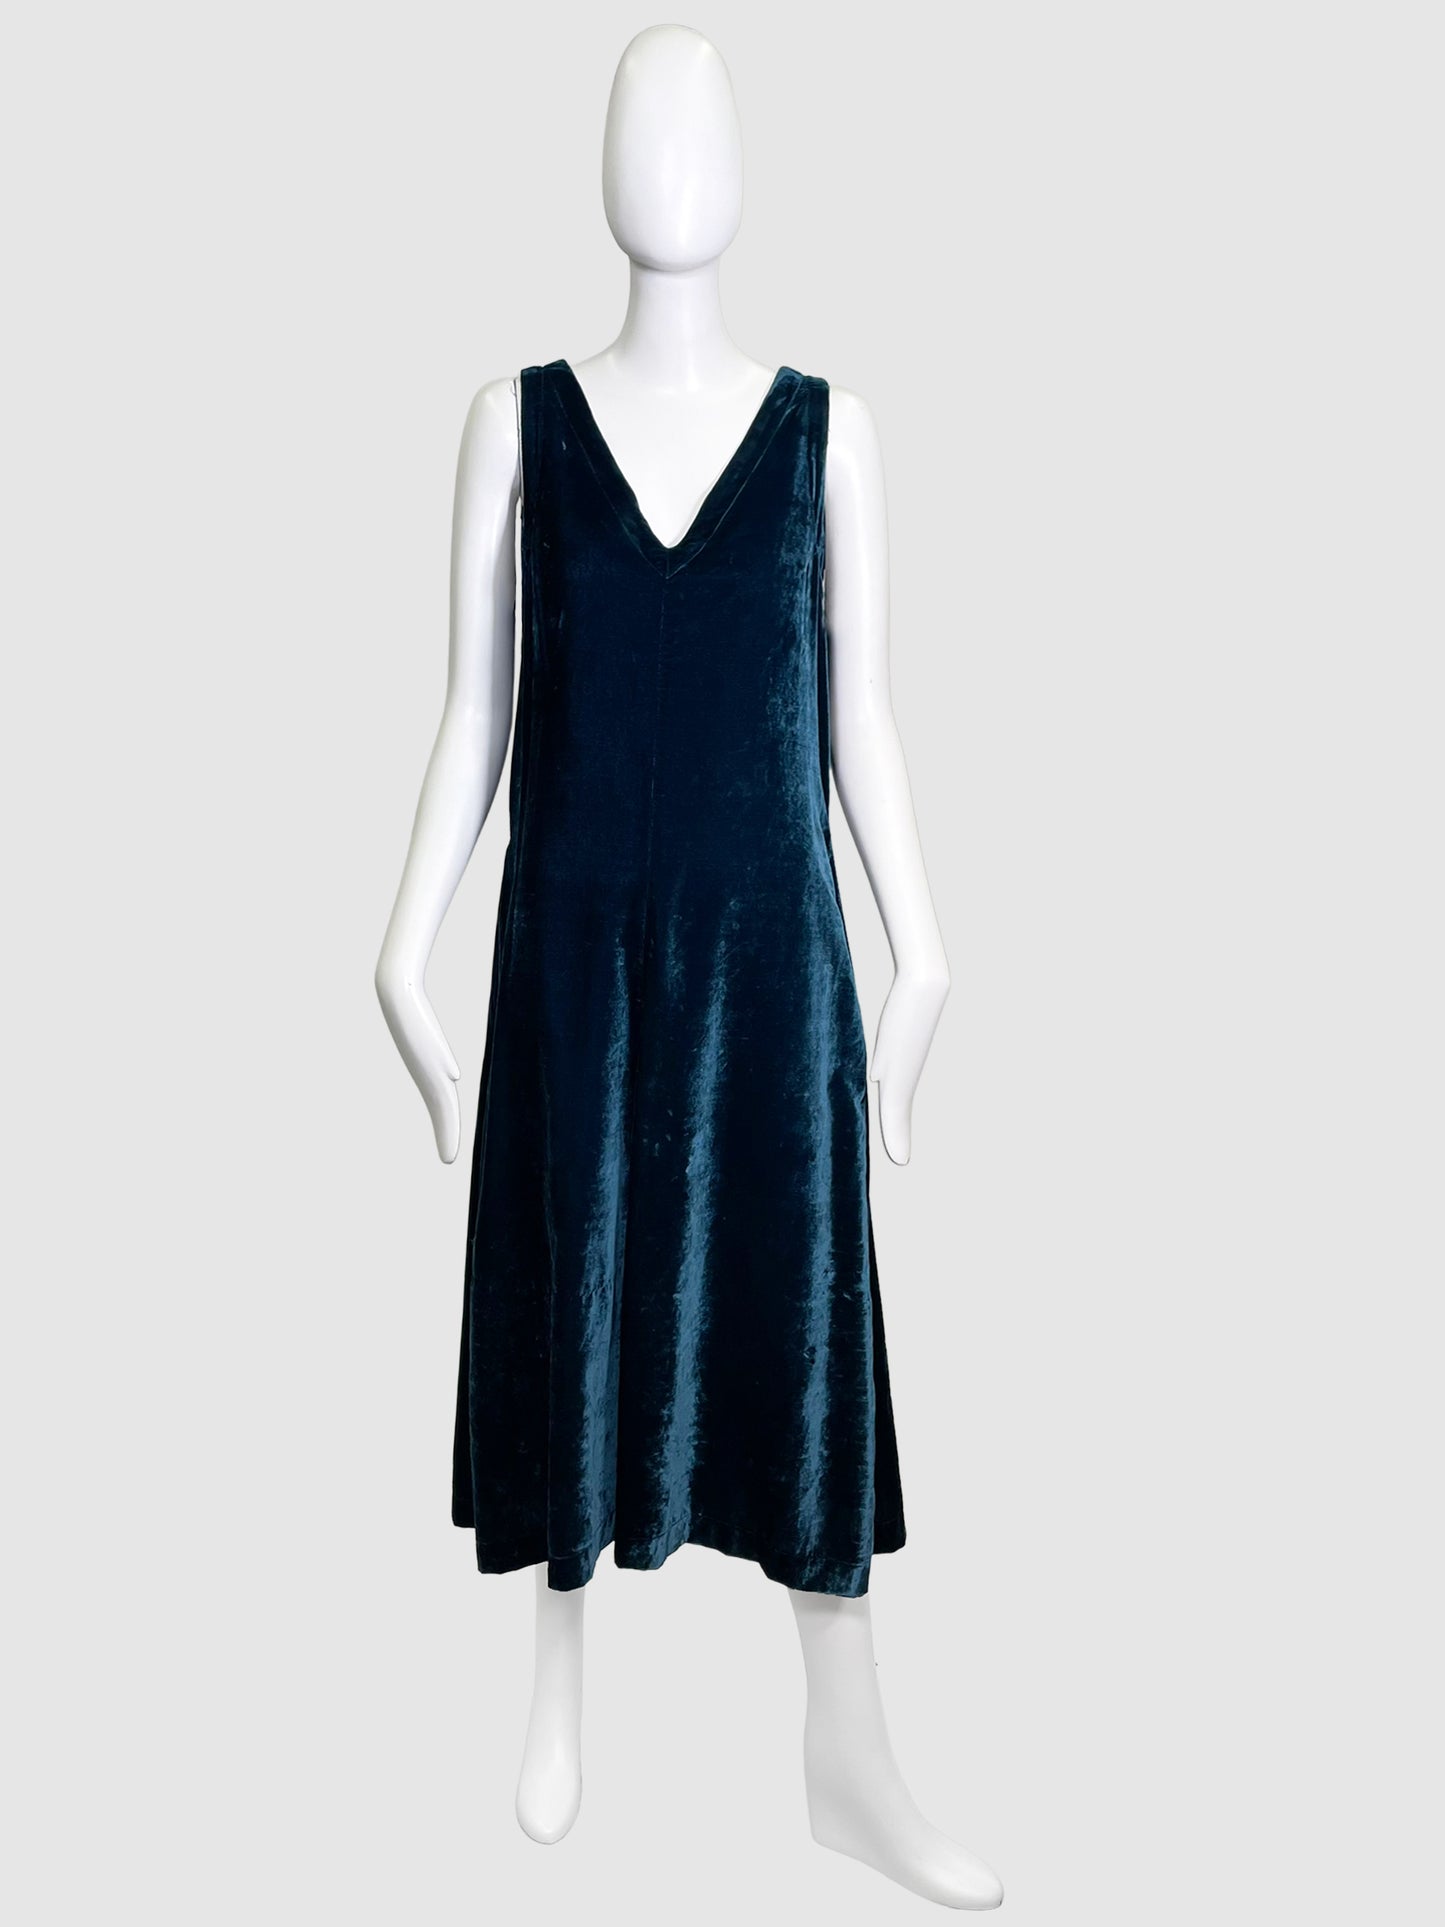 Pomandere Teal V-Neck Velvet Dress - Size 8